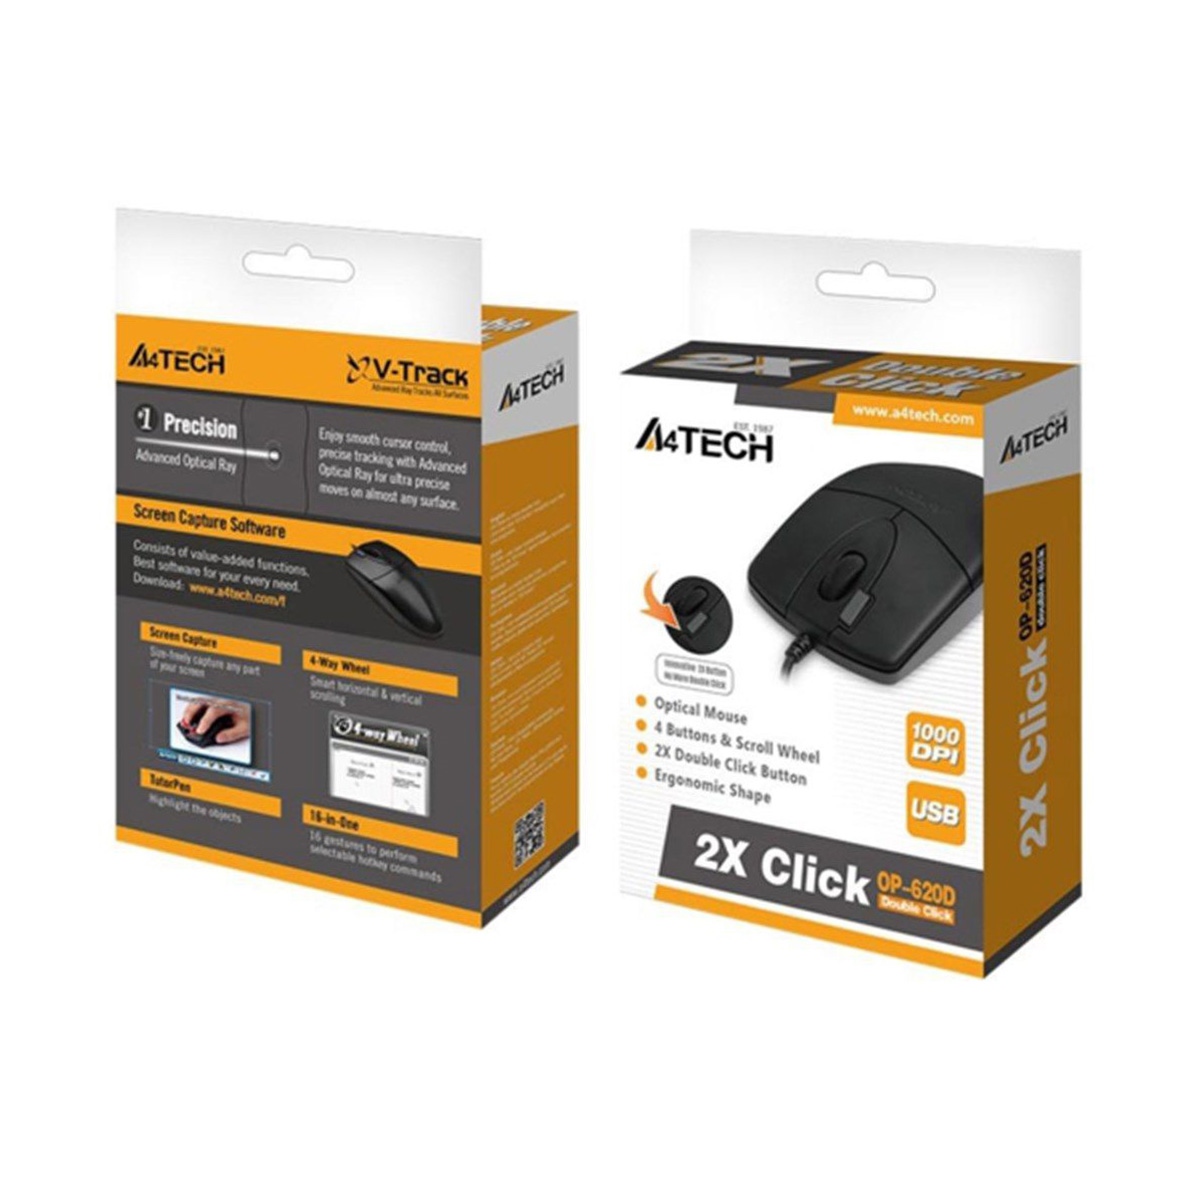 A4 Tech mouse op620d-b- A4 2x click siyah usb kablolu | ŞEKERCİOĞLU